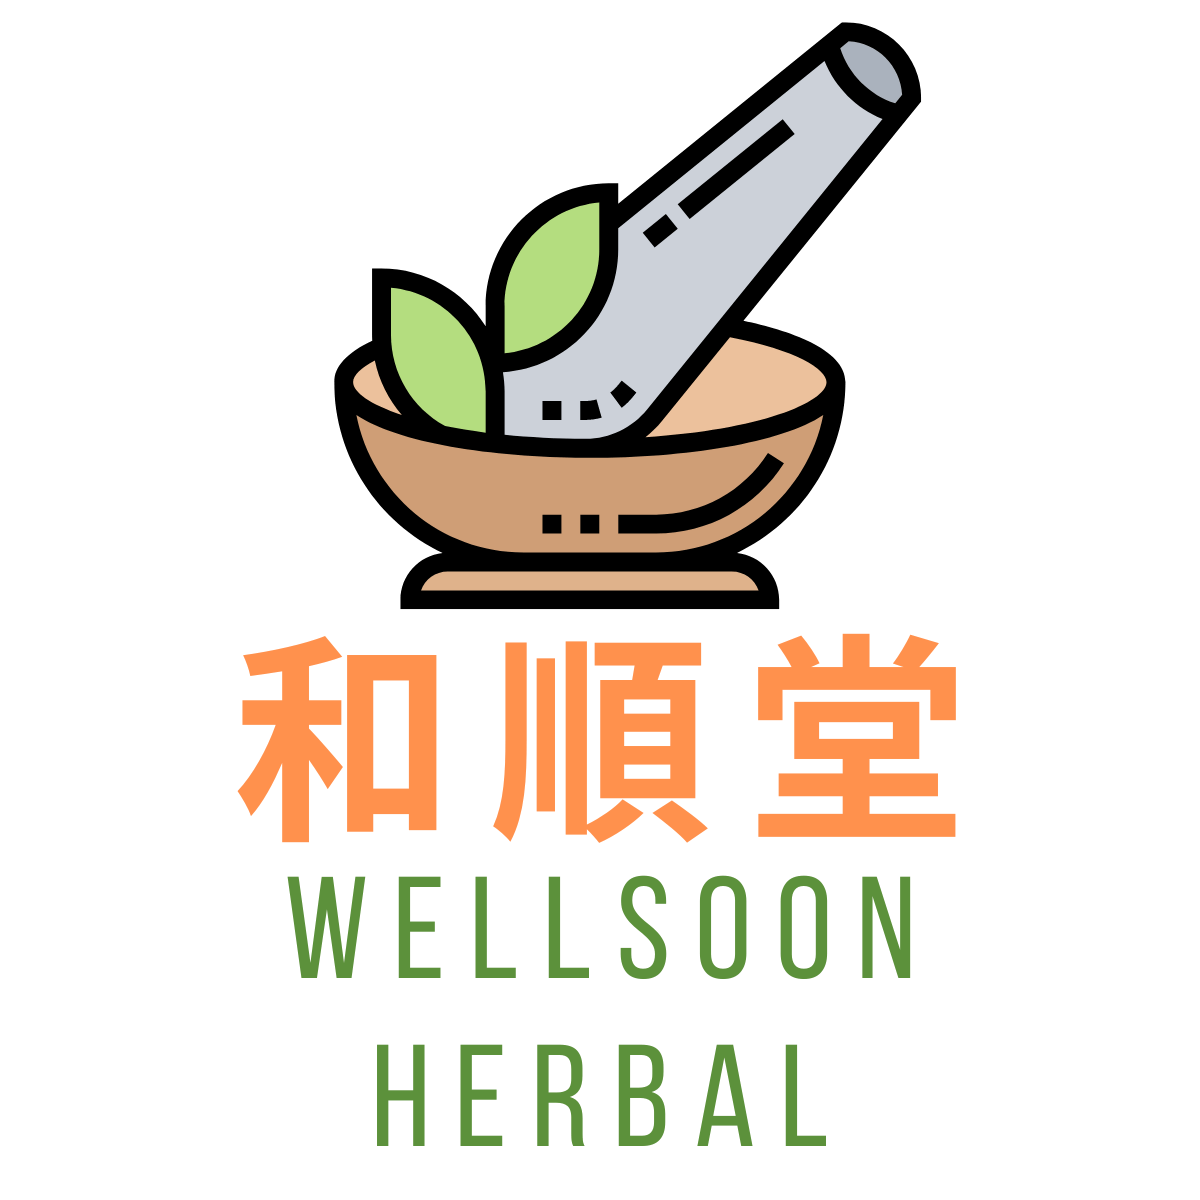 Wellsoon Herbal